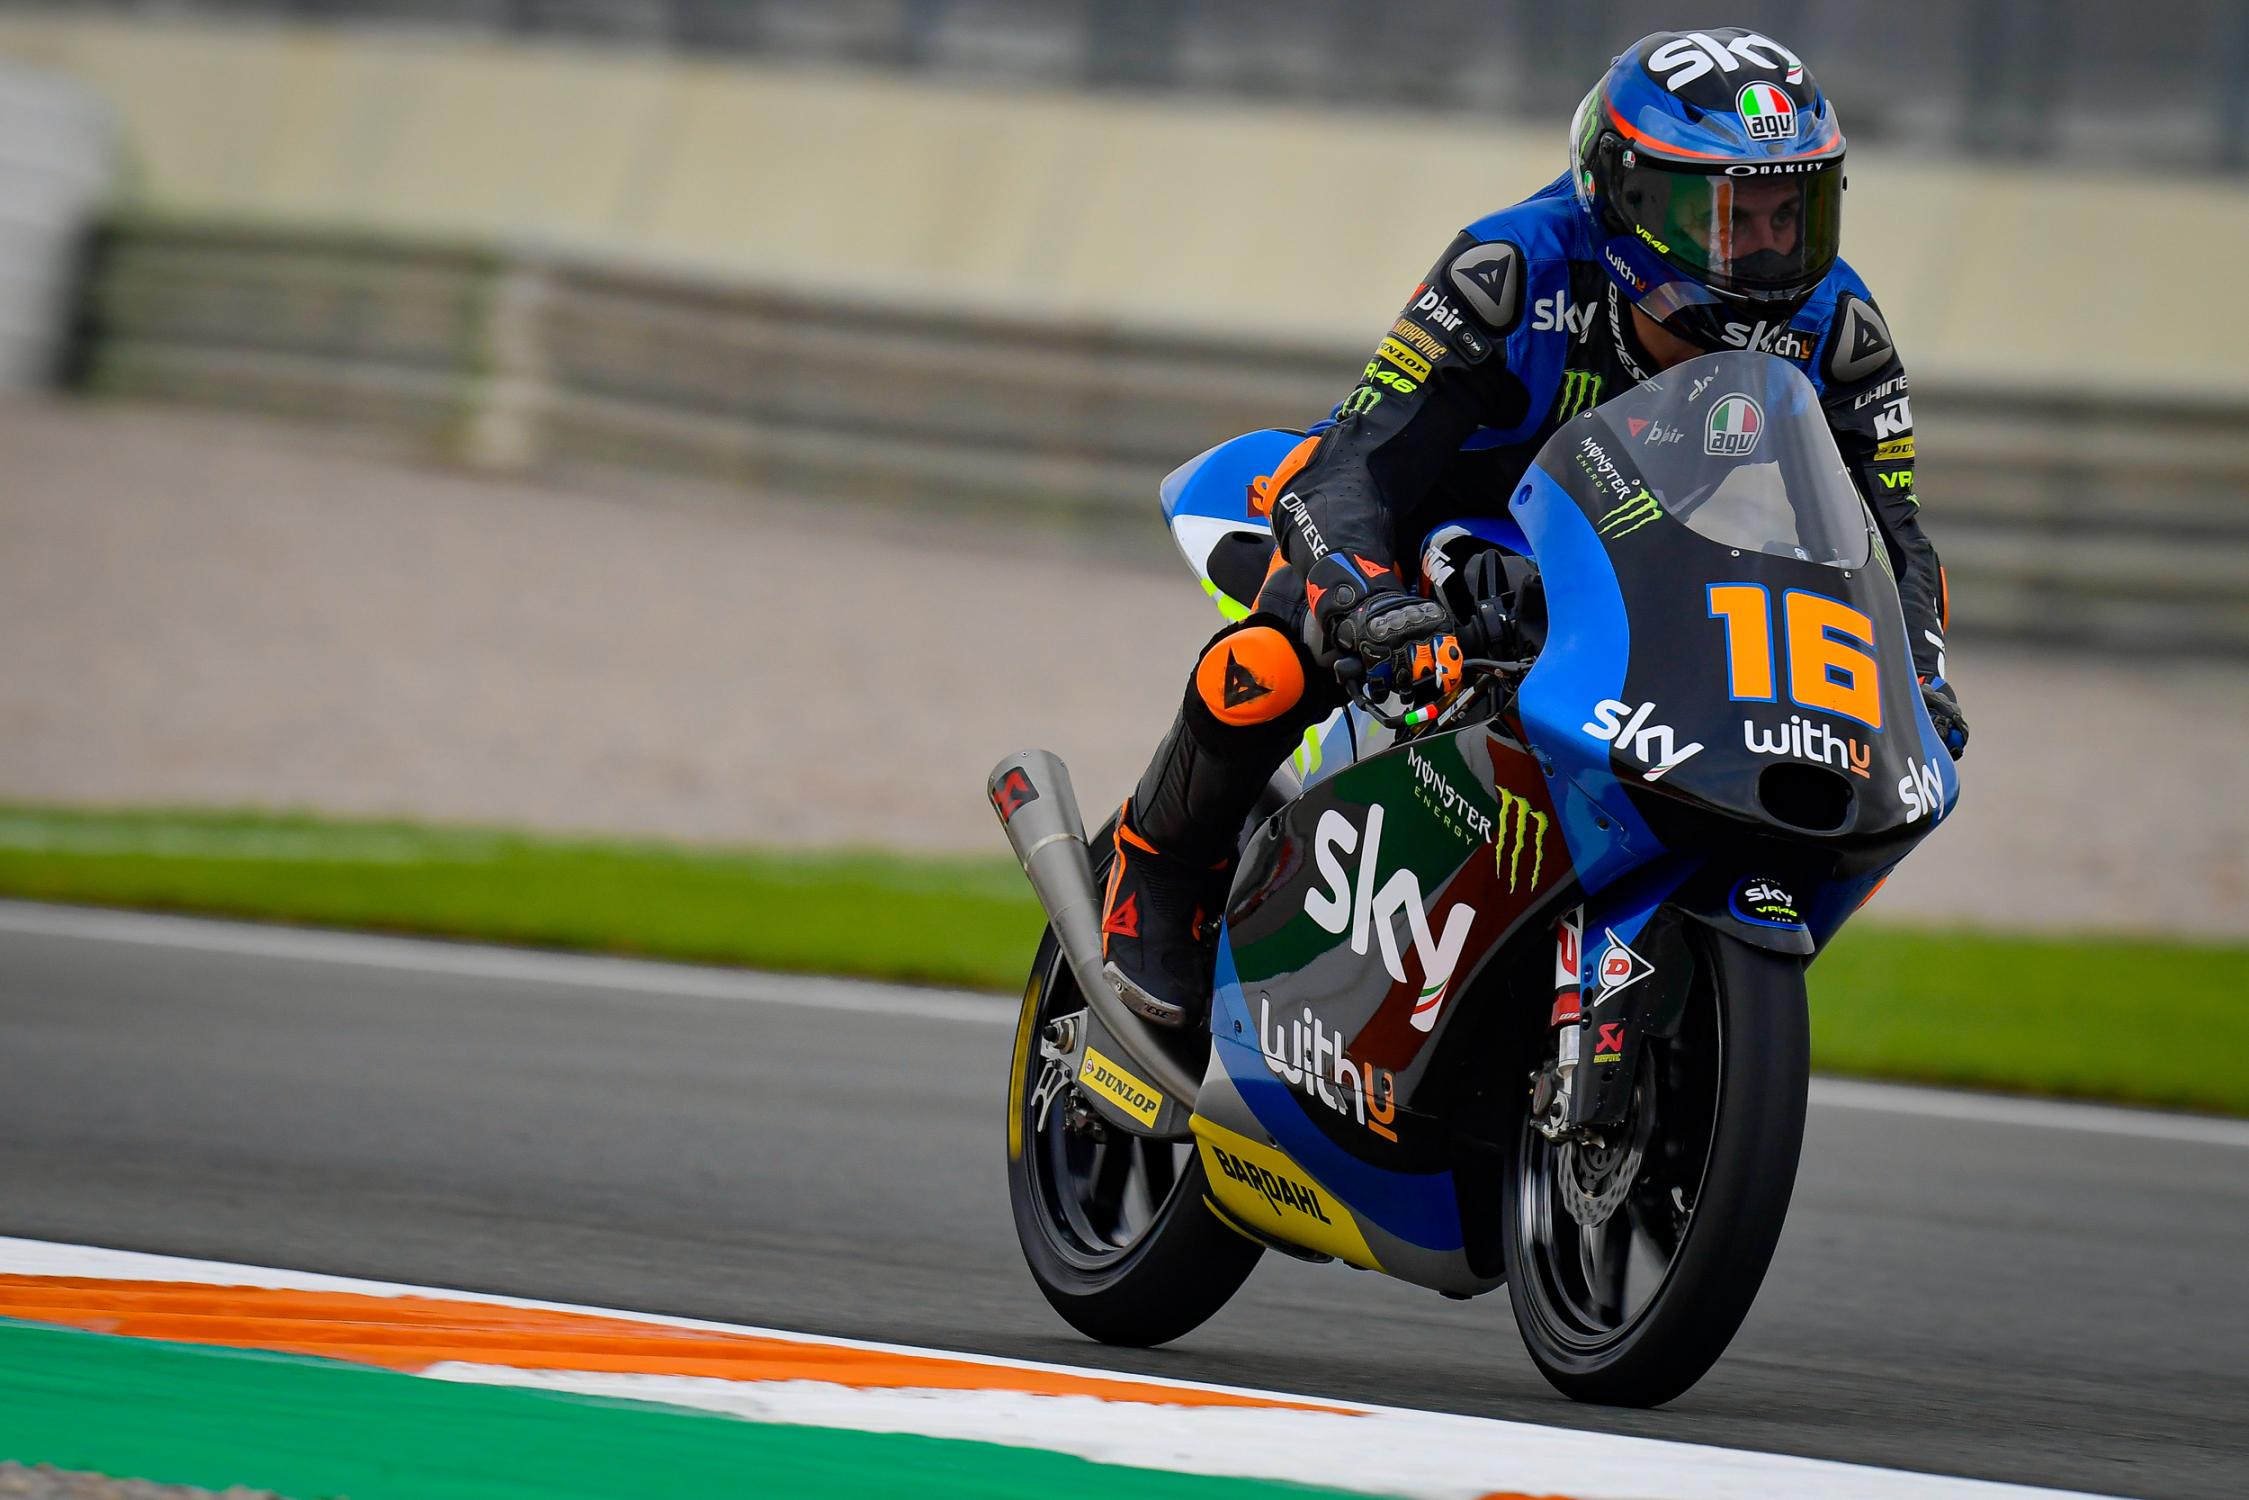 Andrea Migno, SKY Racing Team Vr46 MotoGP™